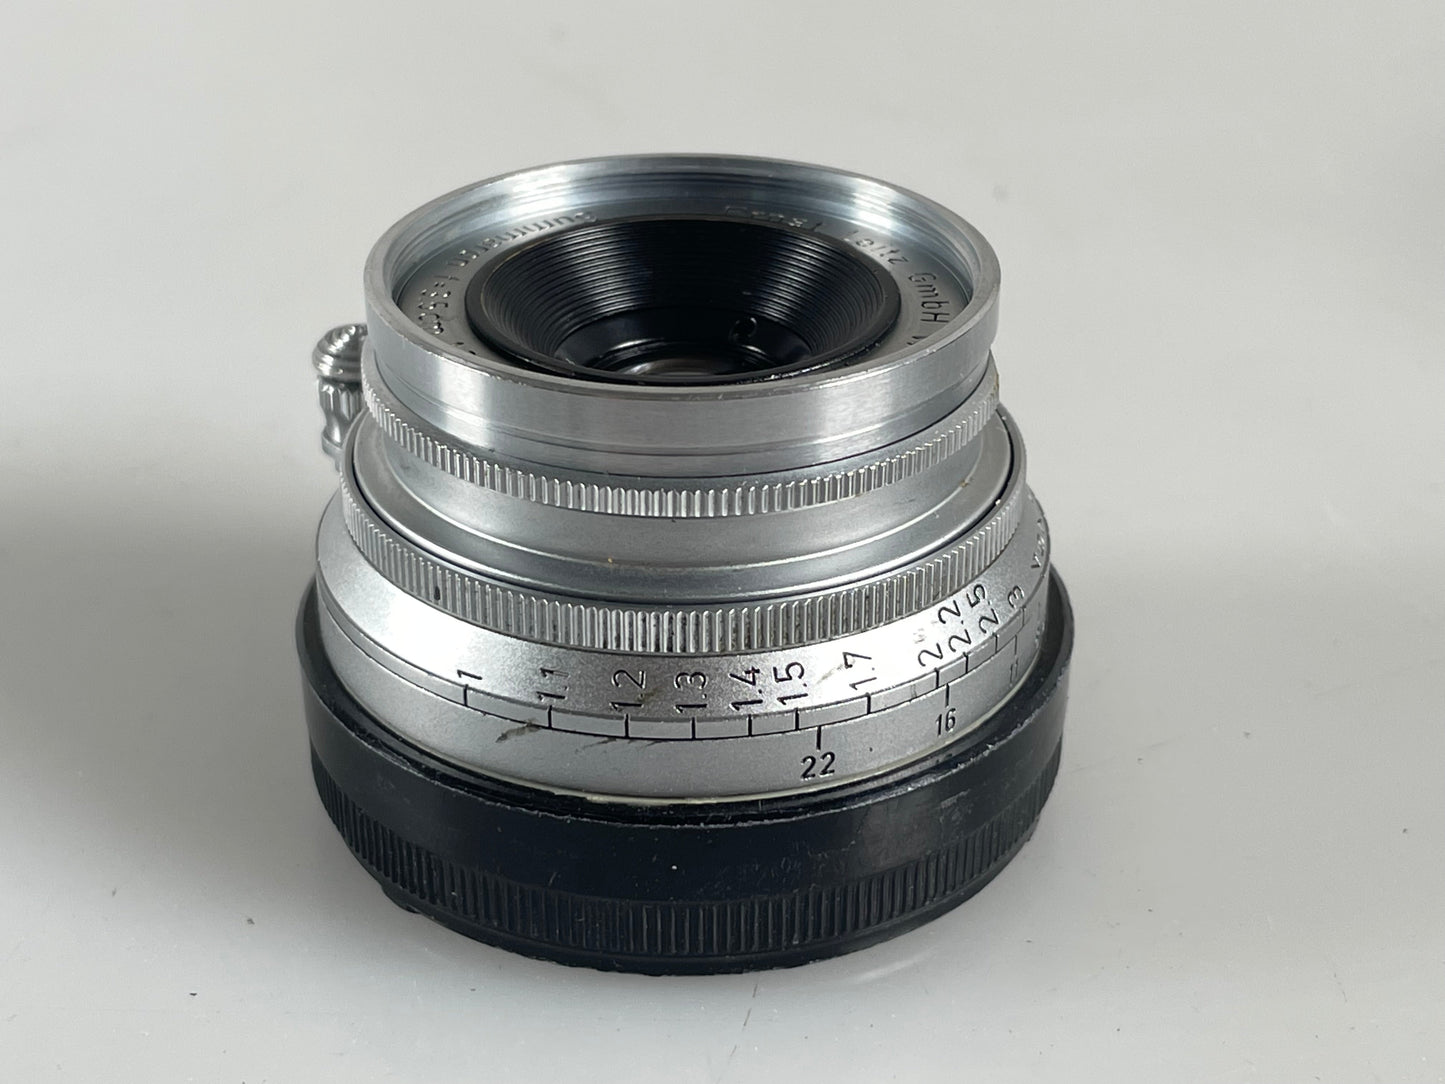 Leica 35mm f3.5 Summaron M mount 3.5cm lens